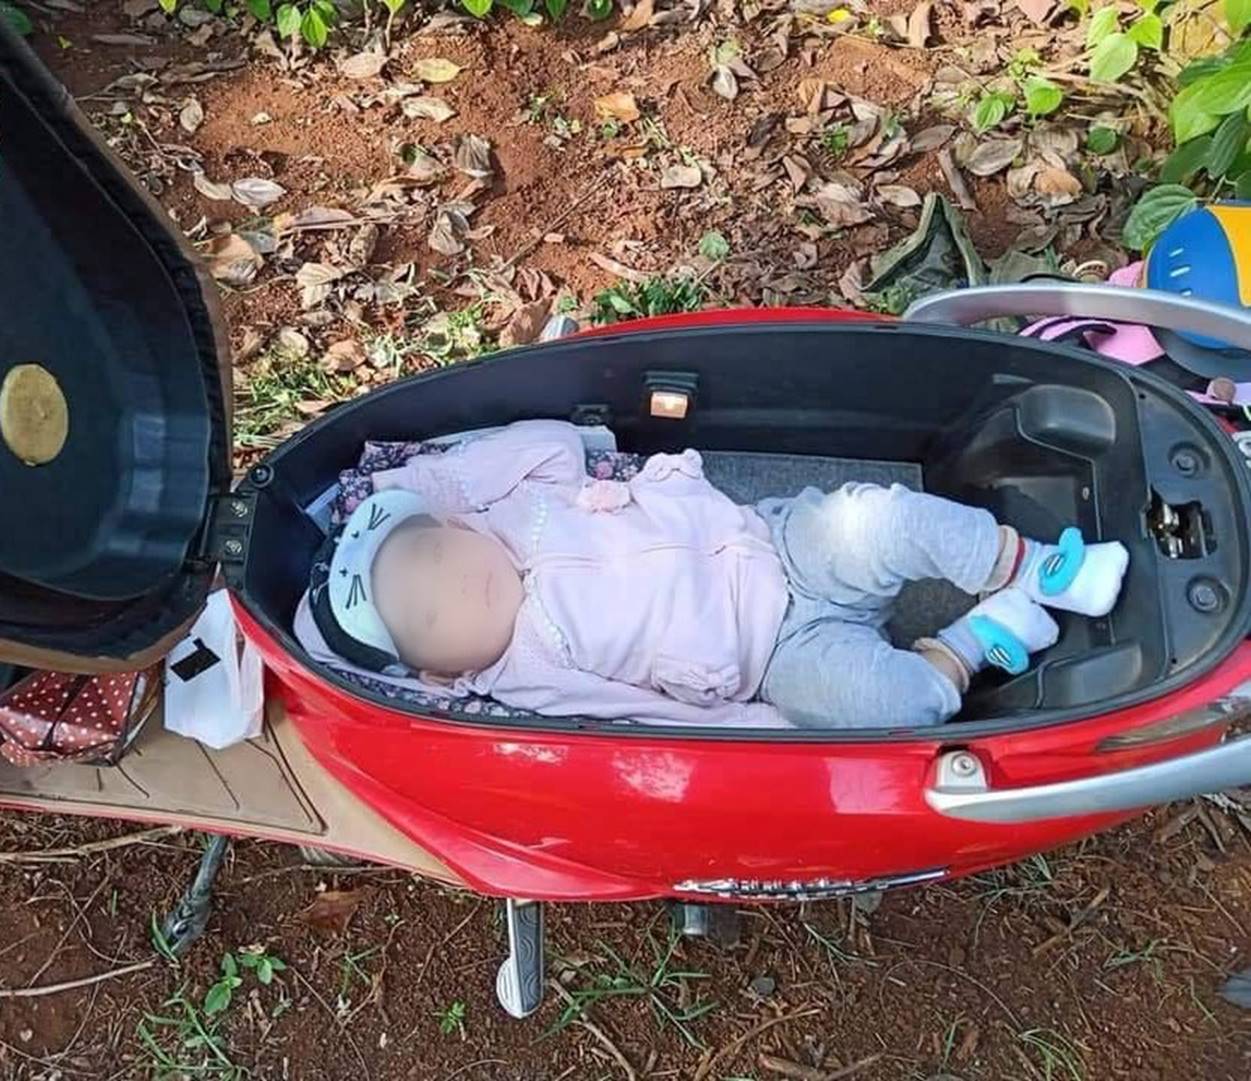 Hình ảnh em bé ngủ trong cốp xe máy khi theo bố mẹ đi rẫy, người khen dễ thương, người giật mình sợ nguy hiểm-4